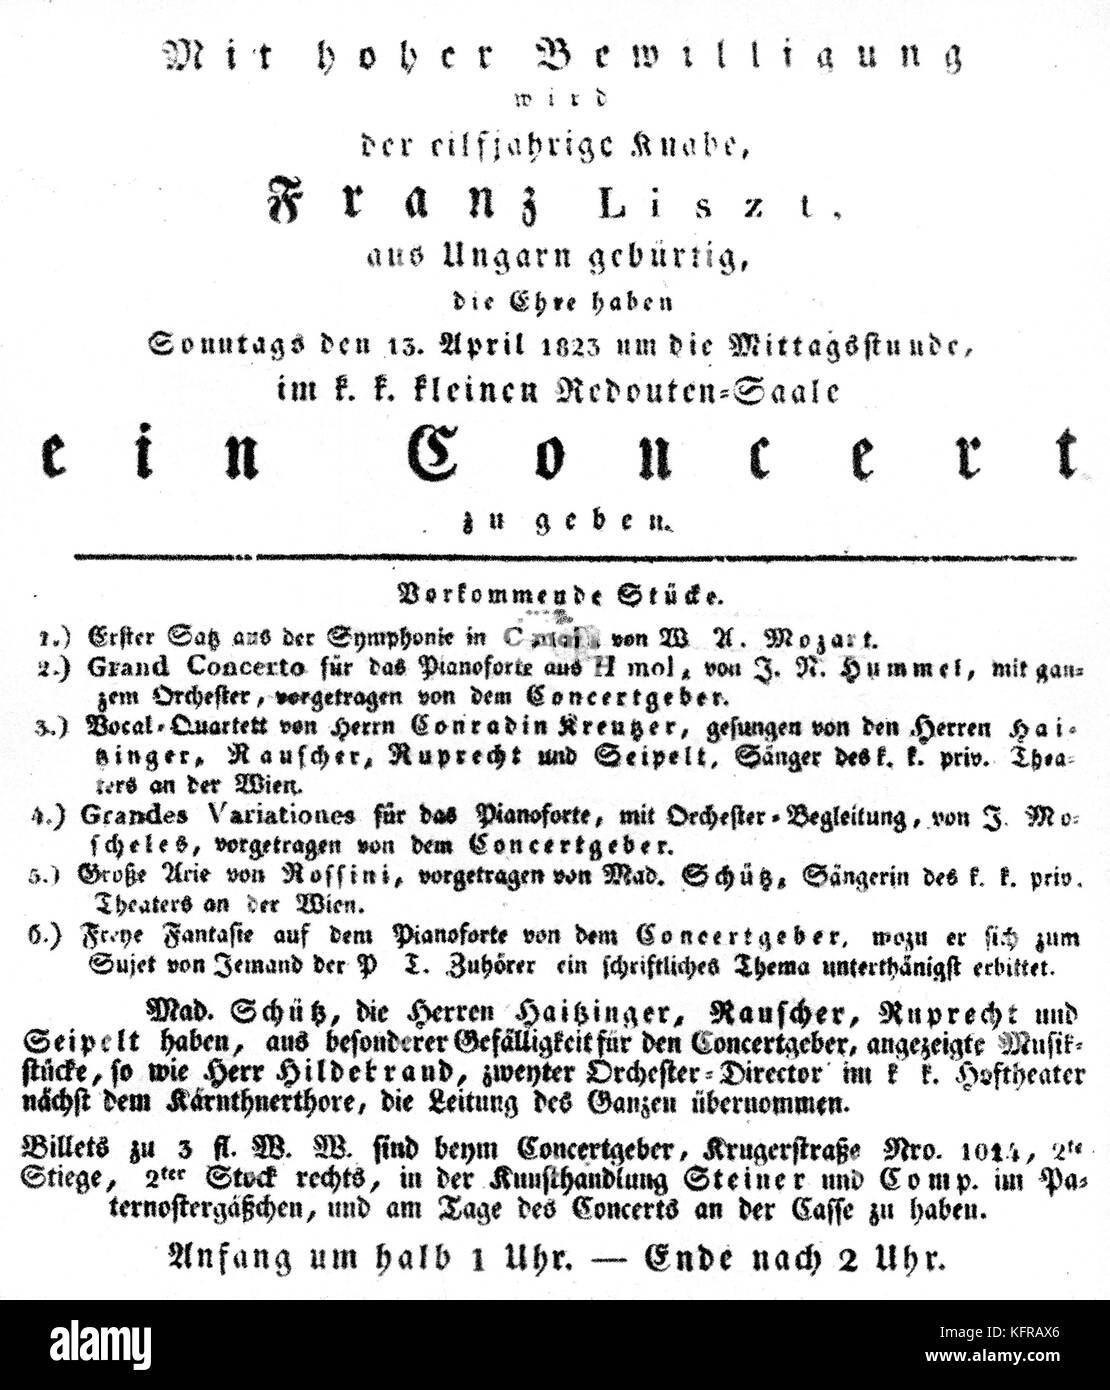 Programme de concert dirigé par Franz Liszt, 13 avril 1823, Vienne, Autriche. FL : pianiste et compositeur hongrois, 22 octobre 1811 - 31 juillet 1886. Banque D'Images